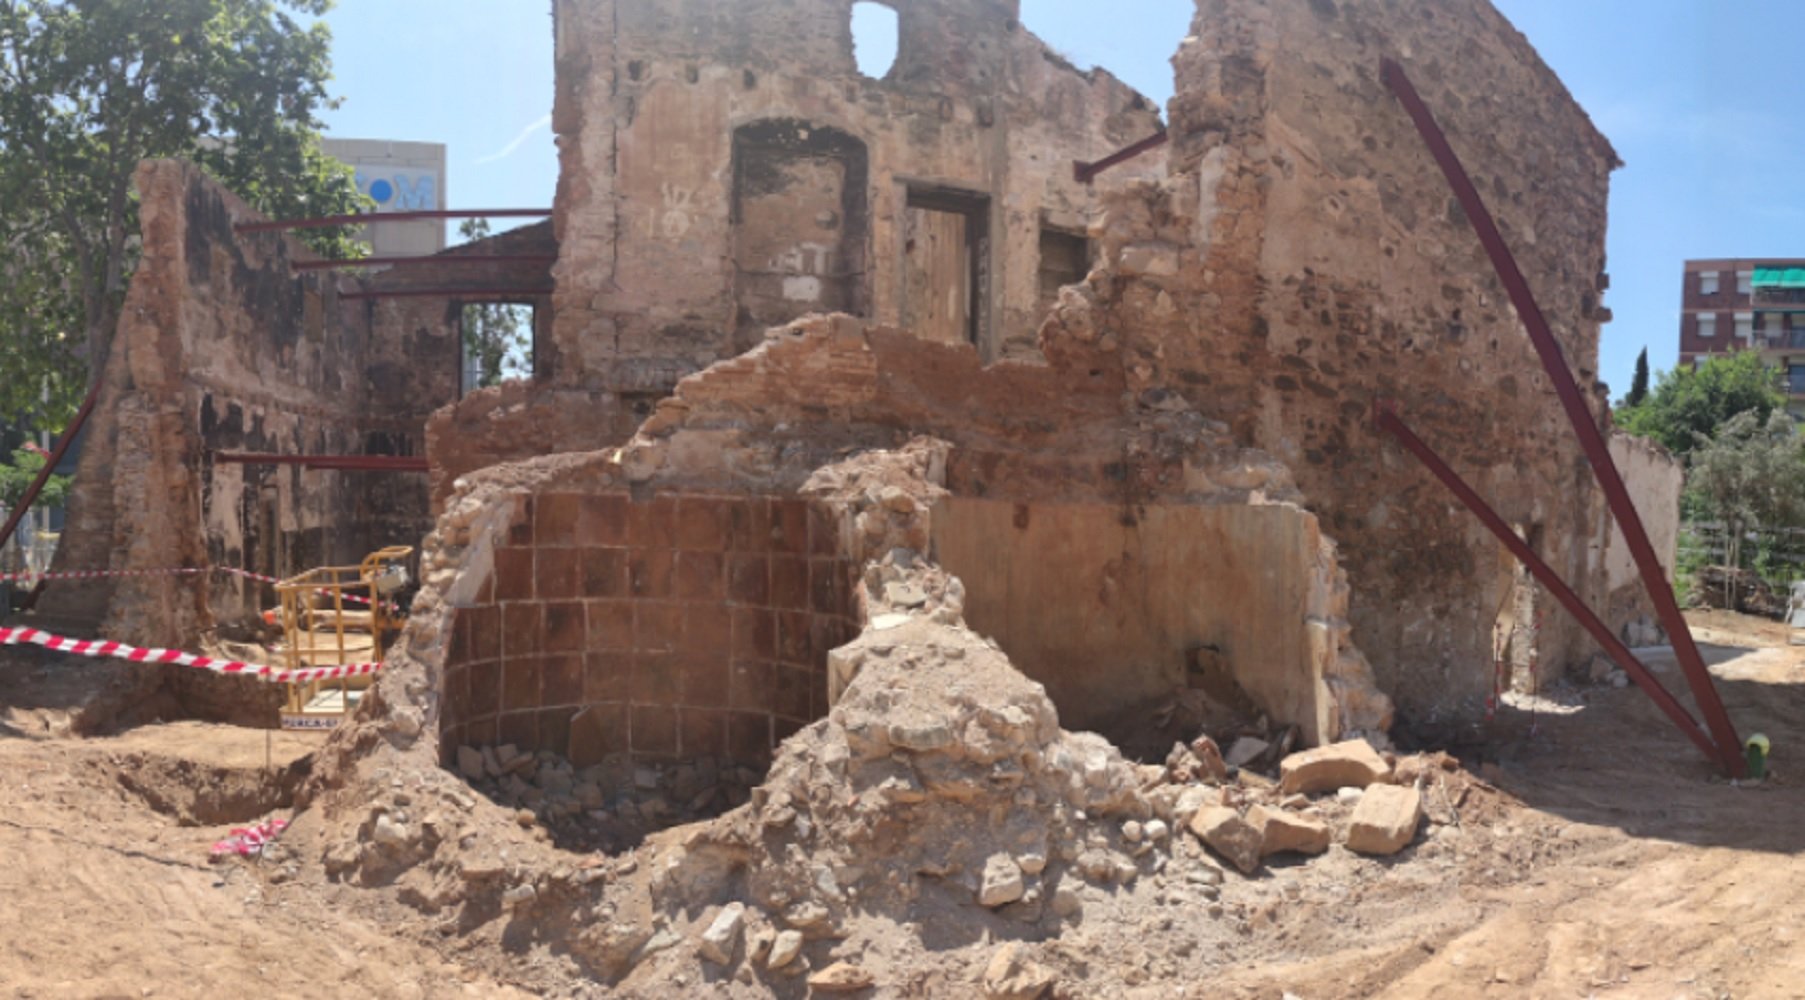 Afloren restes arqueològiques en una masia en rehabilitació a Nou Barris